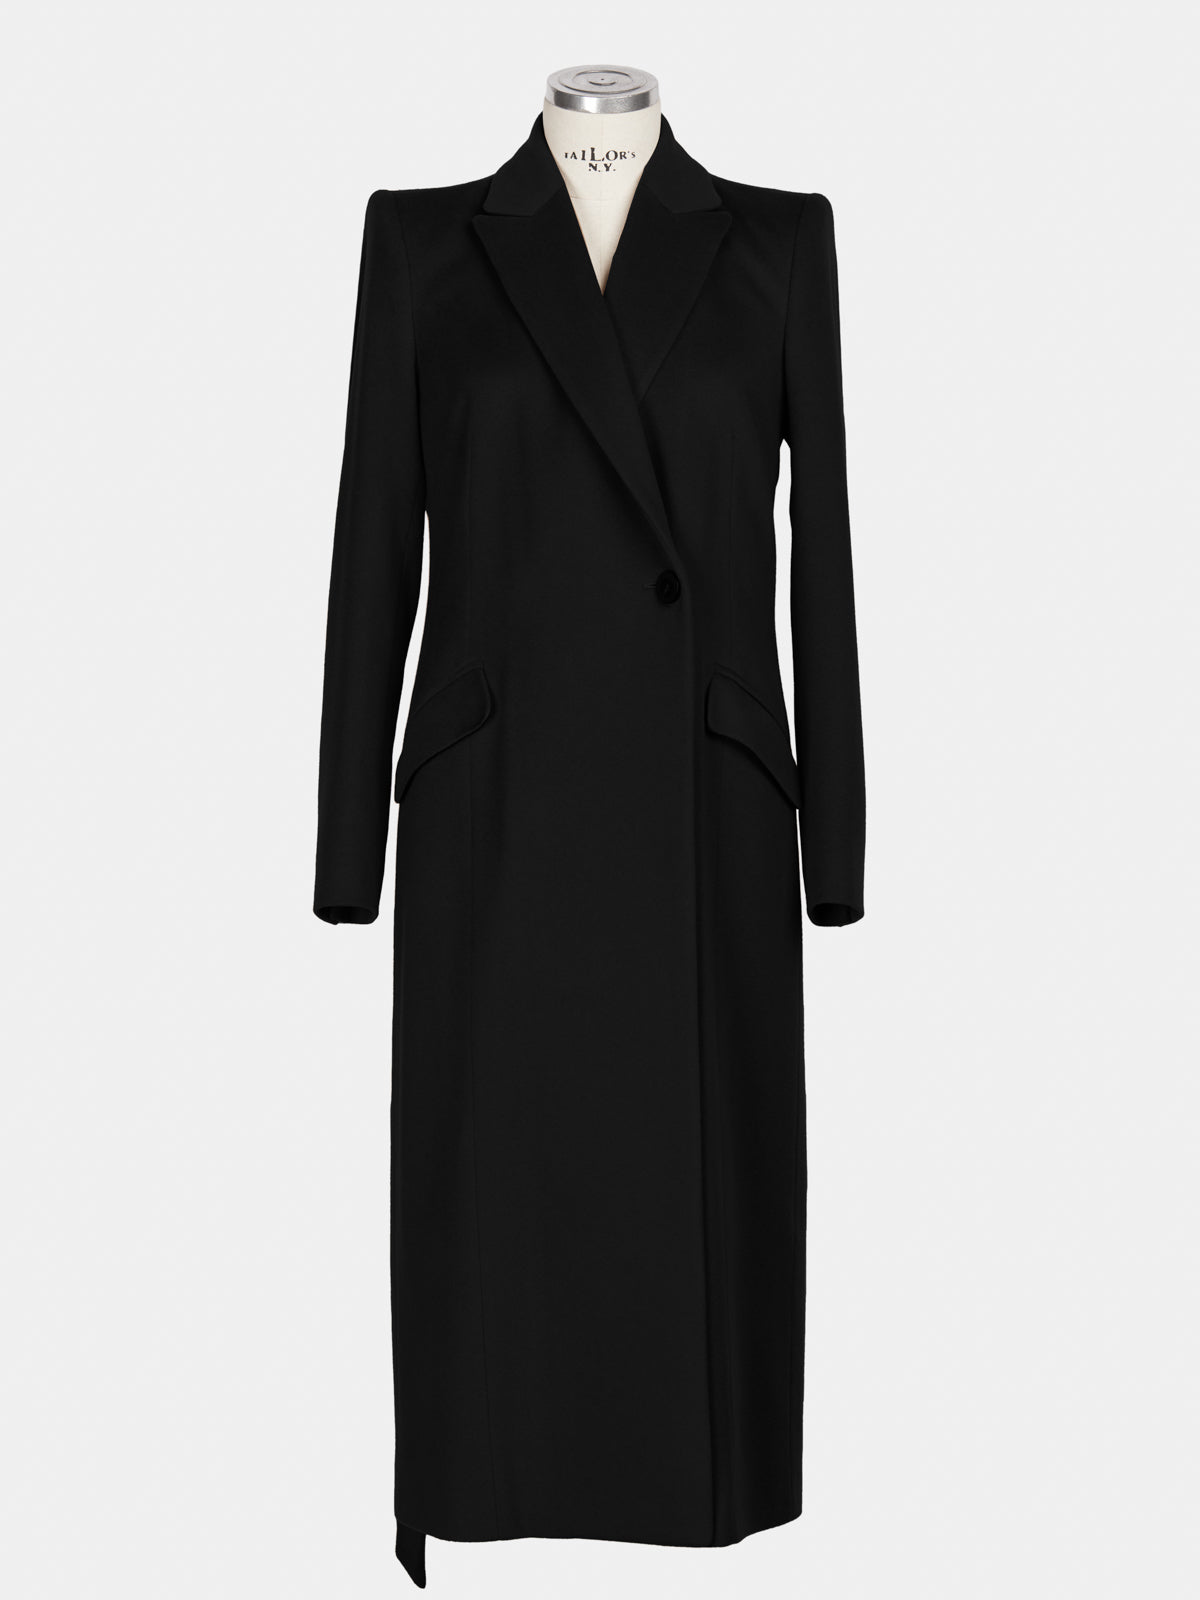 Cappotto cashmere donna lungo nero